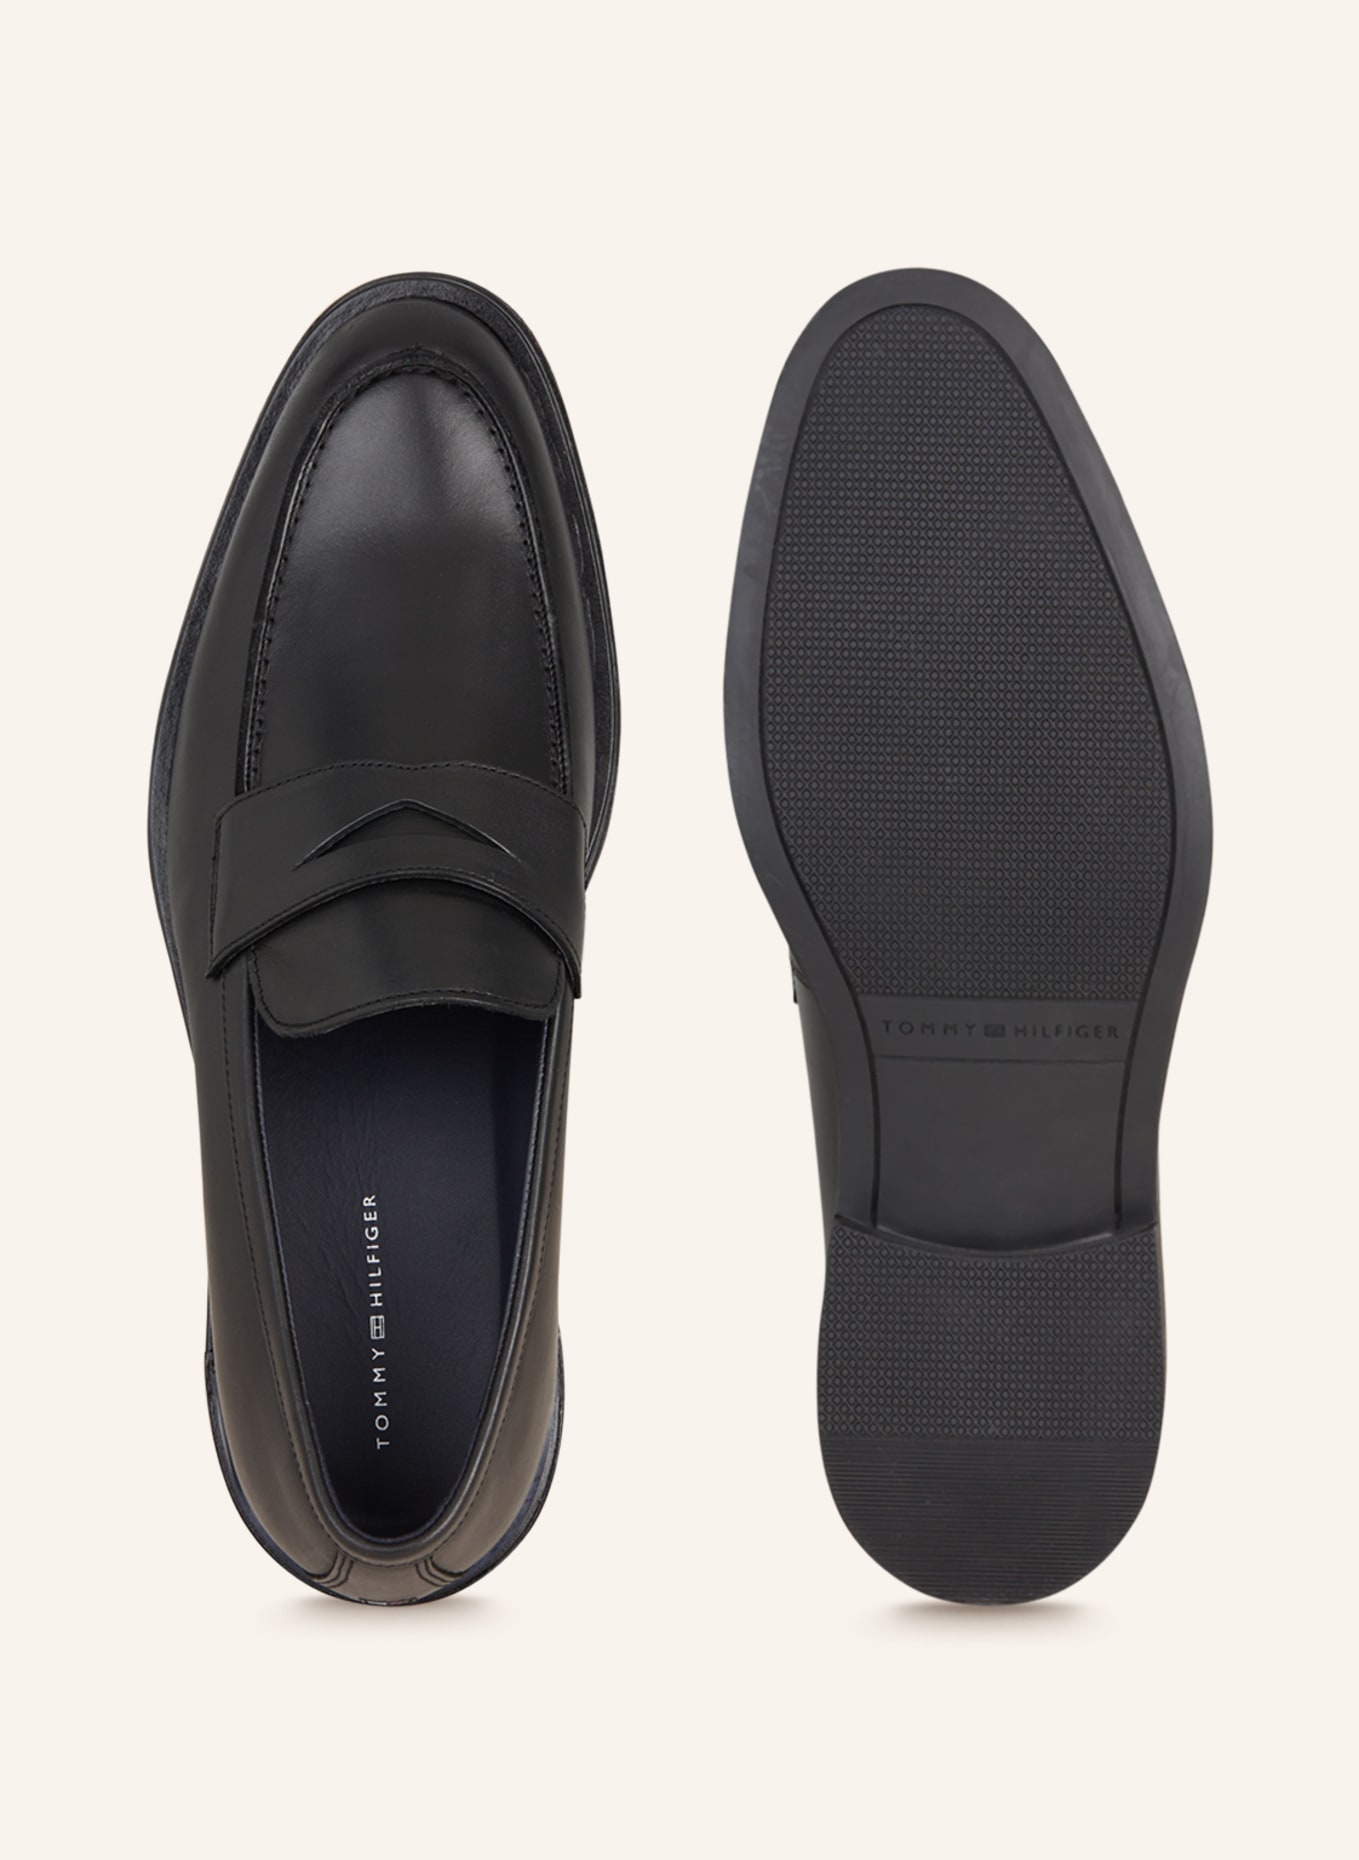 TOMMY HILFIGER Penny loafers, Color: BLACK (Image 5)